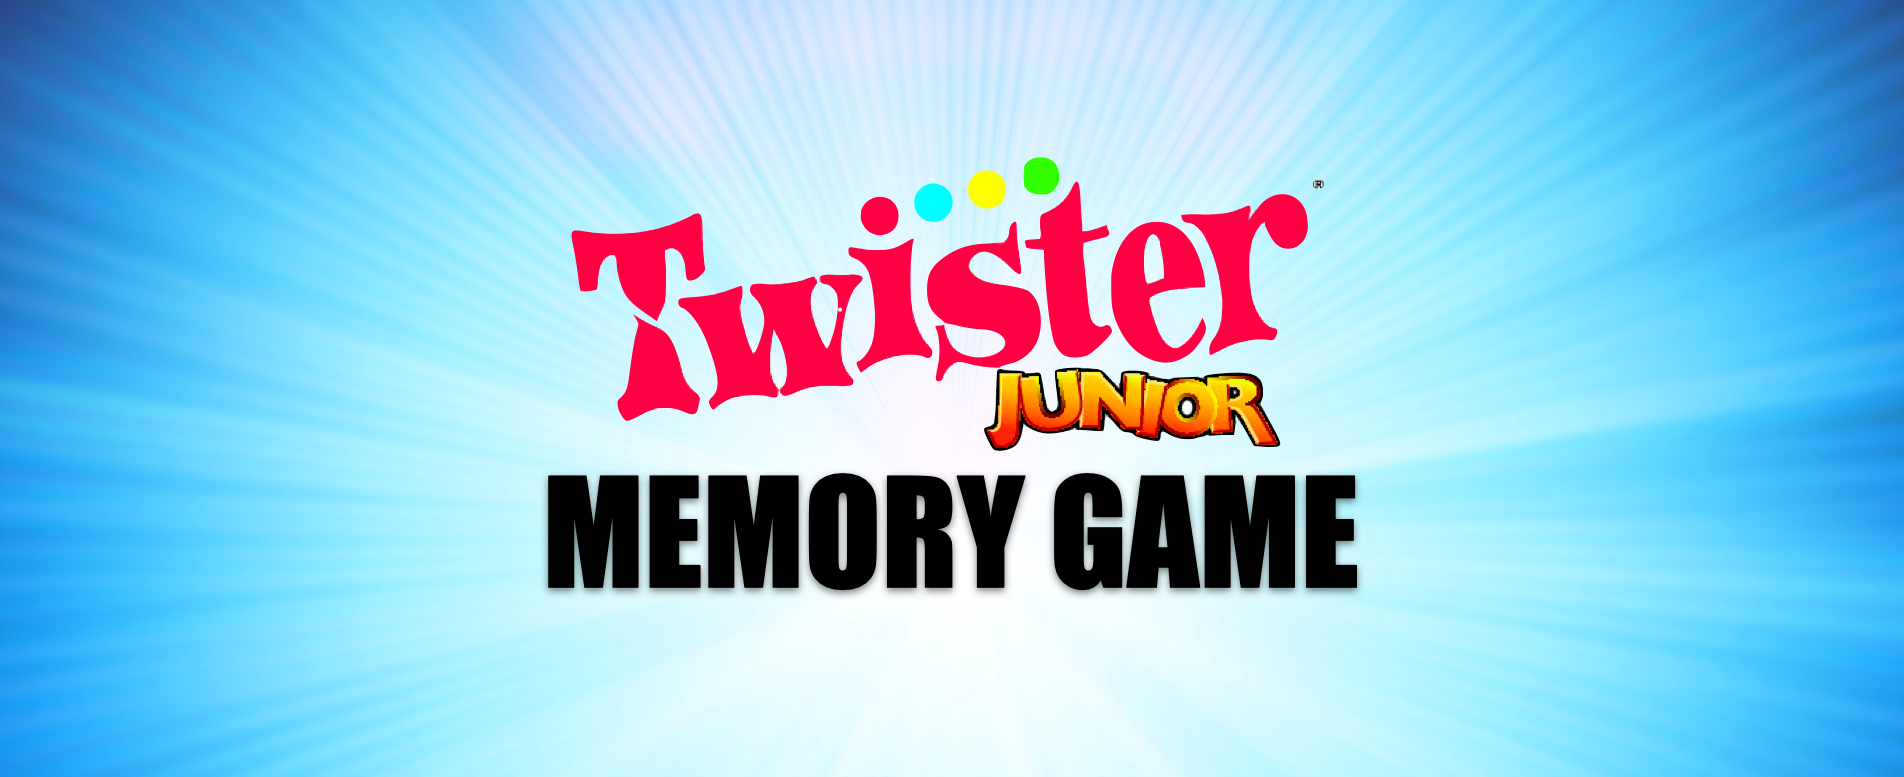 TWISTER JUNIOR MEMORY GAME